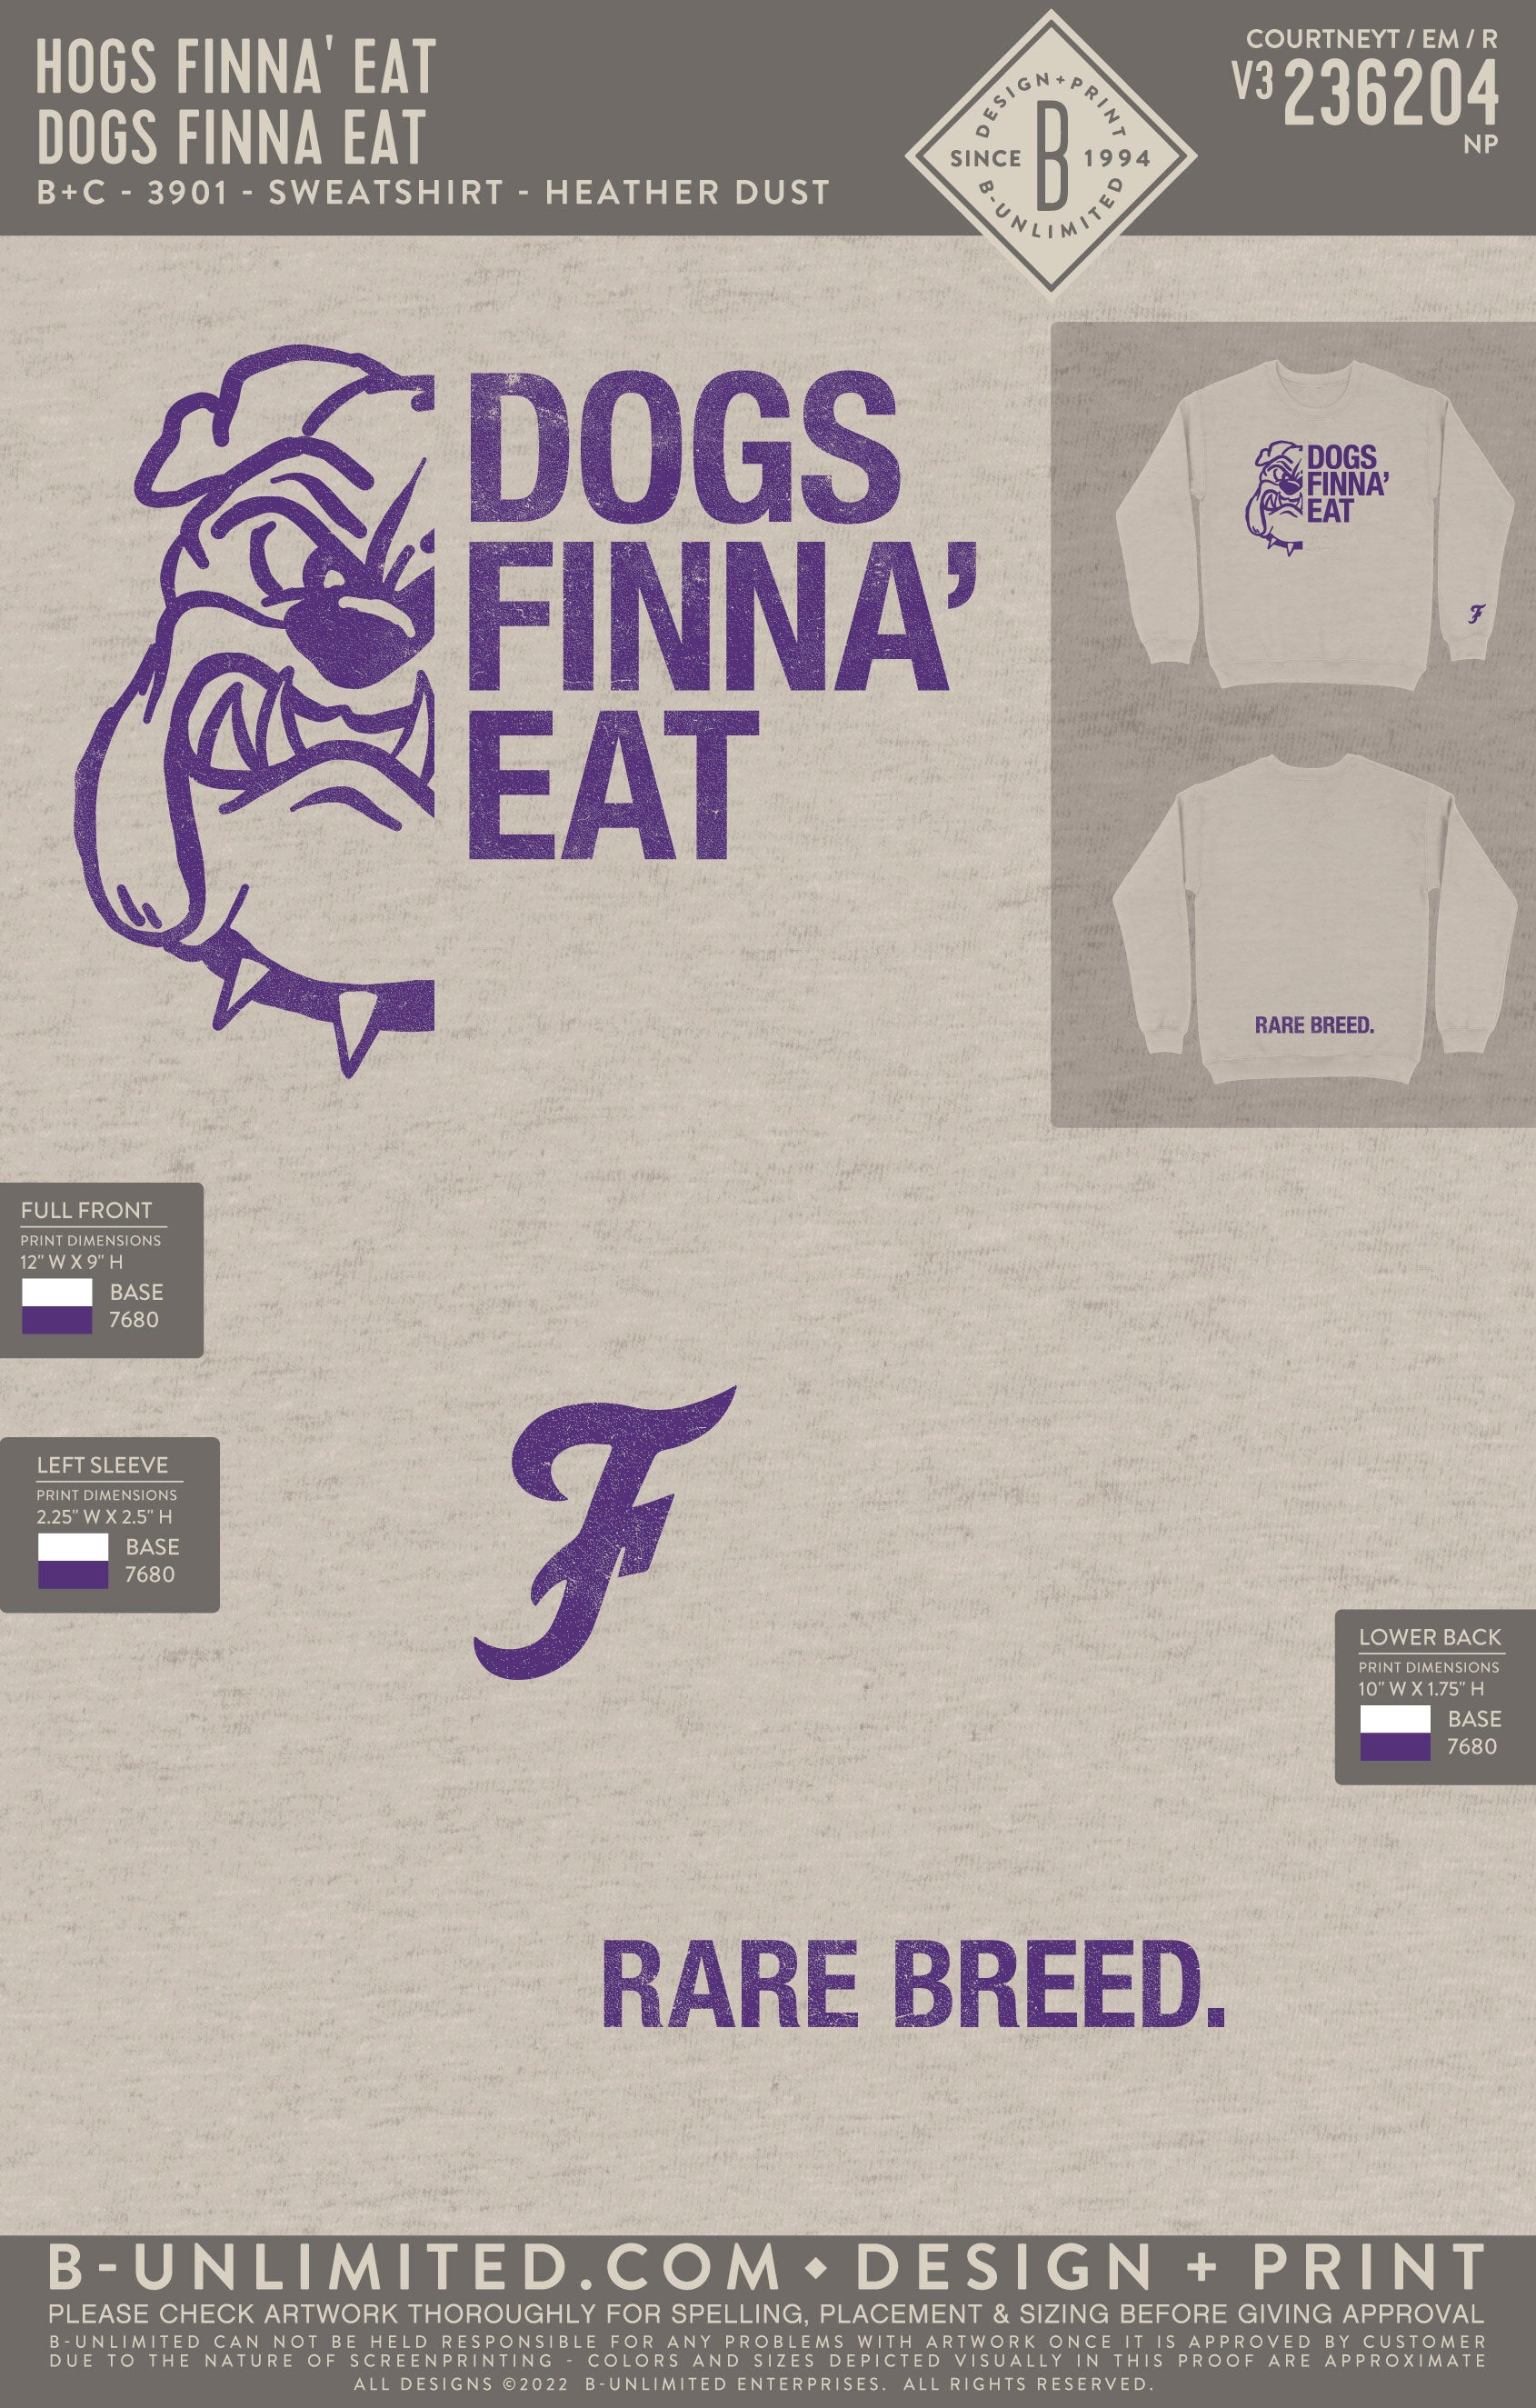 Hogs Finna' Eat - Dogs Finna Eat - B+C - 3901 - Sweatshirt - Heather Dust Fleece